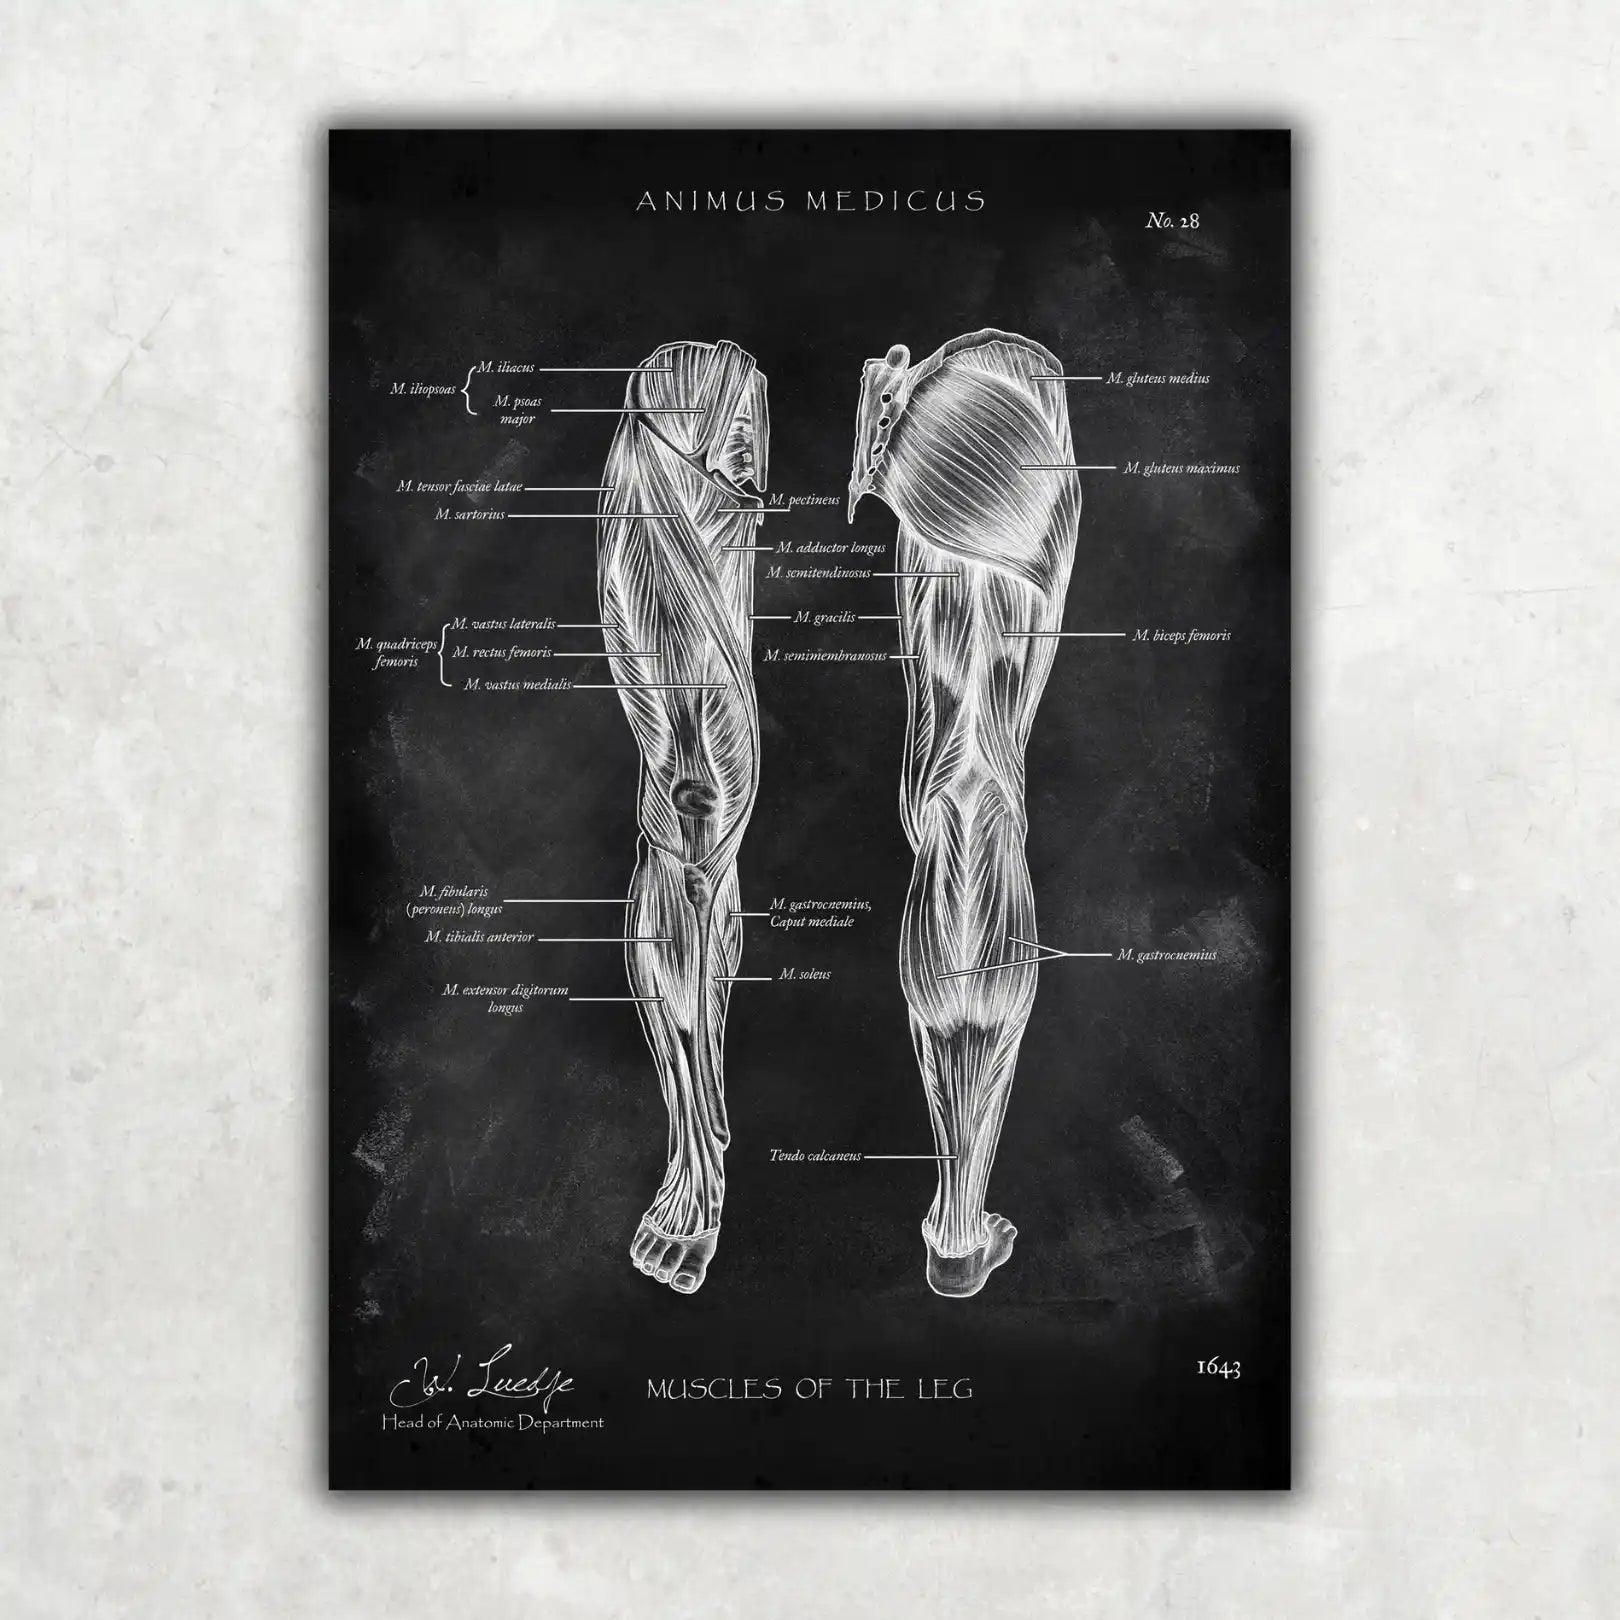 Knie Anatomie Sammlung - Chalkboard - Animus Medicus GmbH